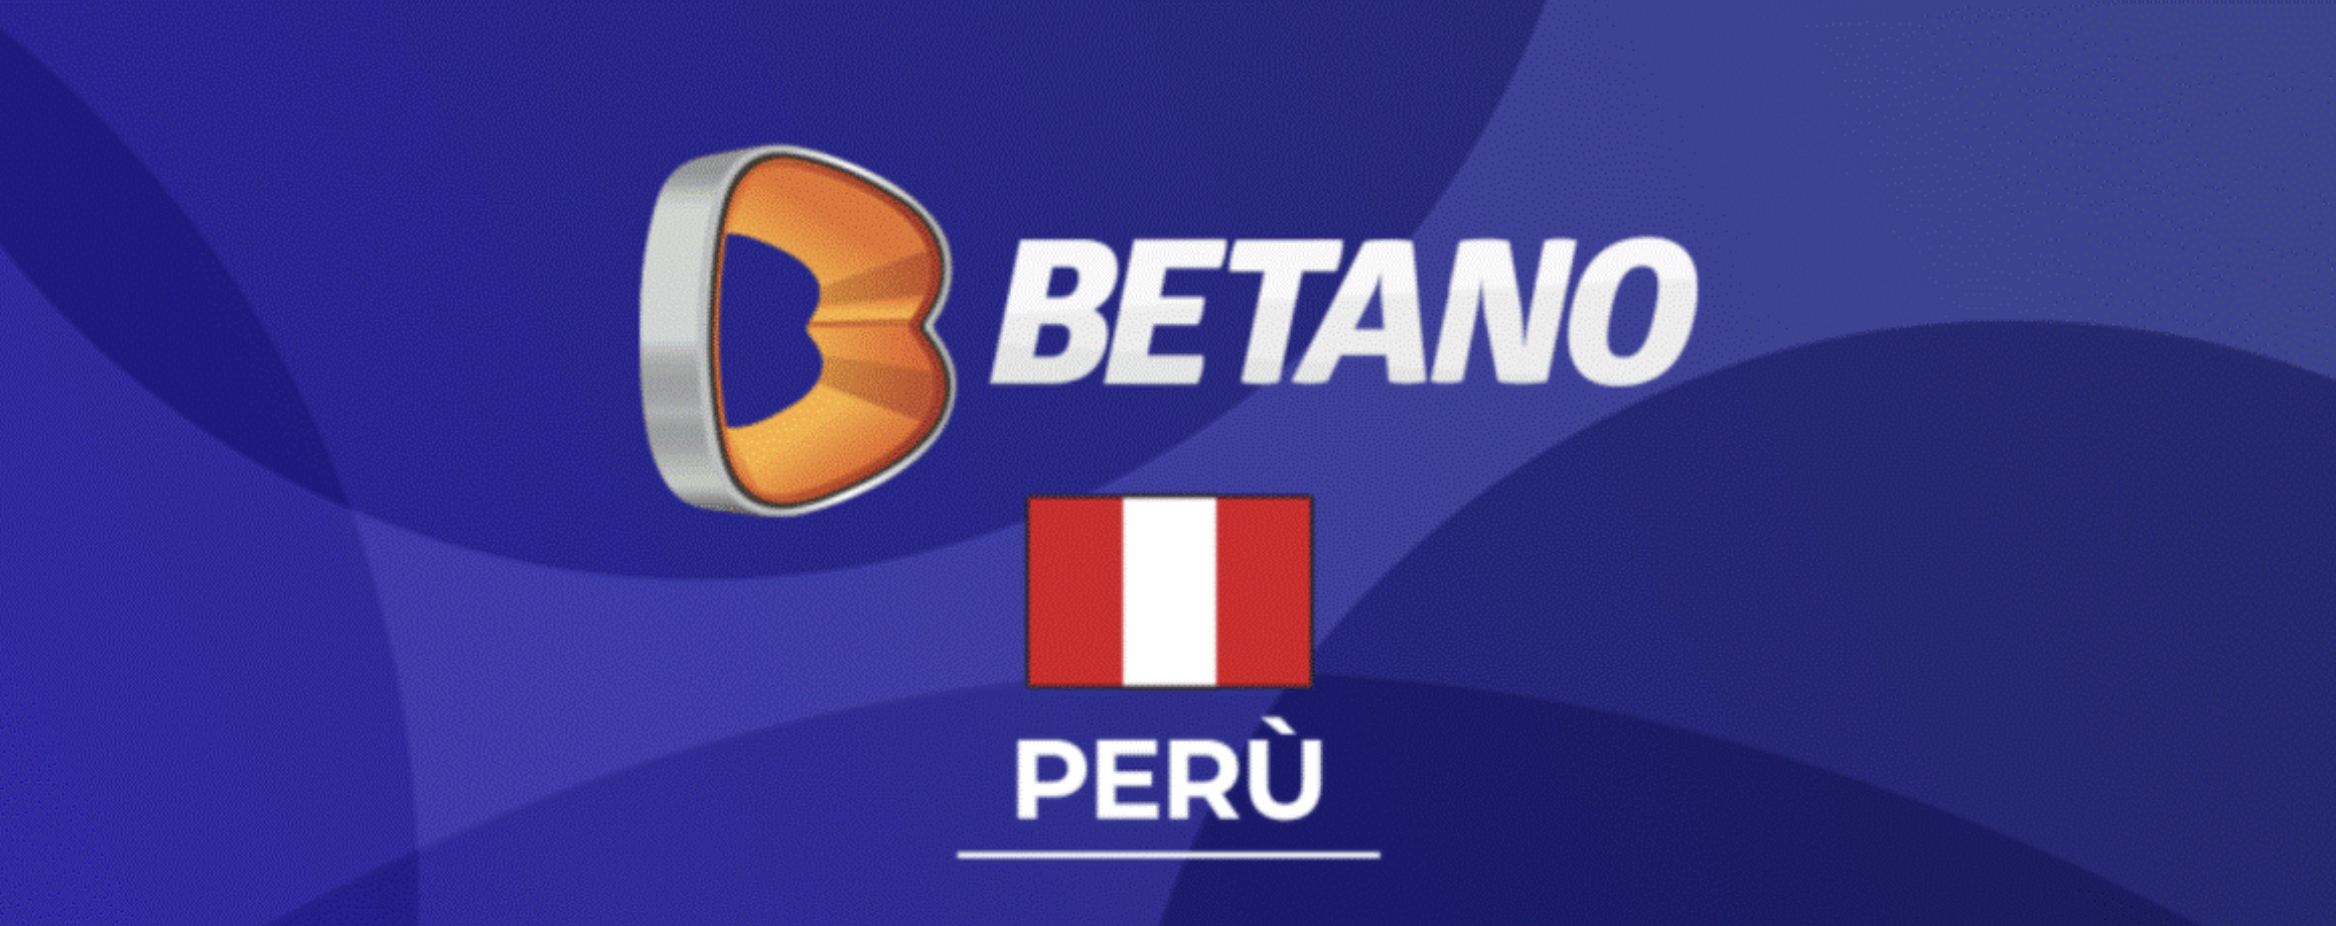 Betano Peru